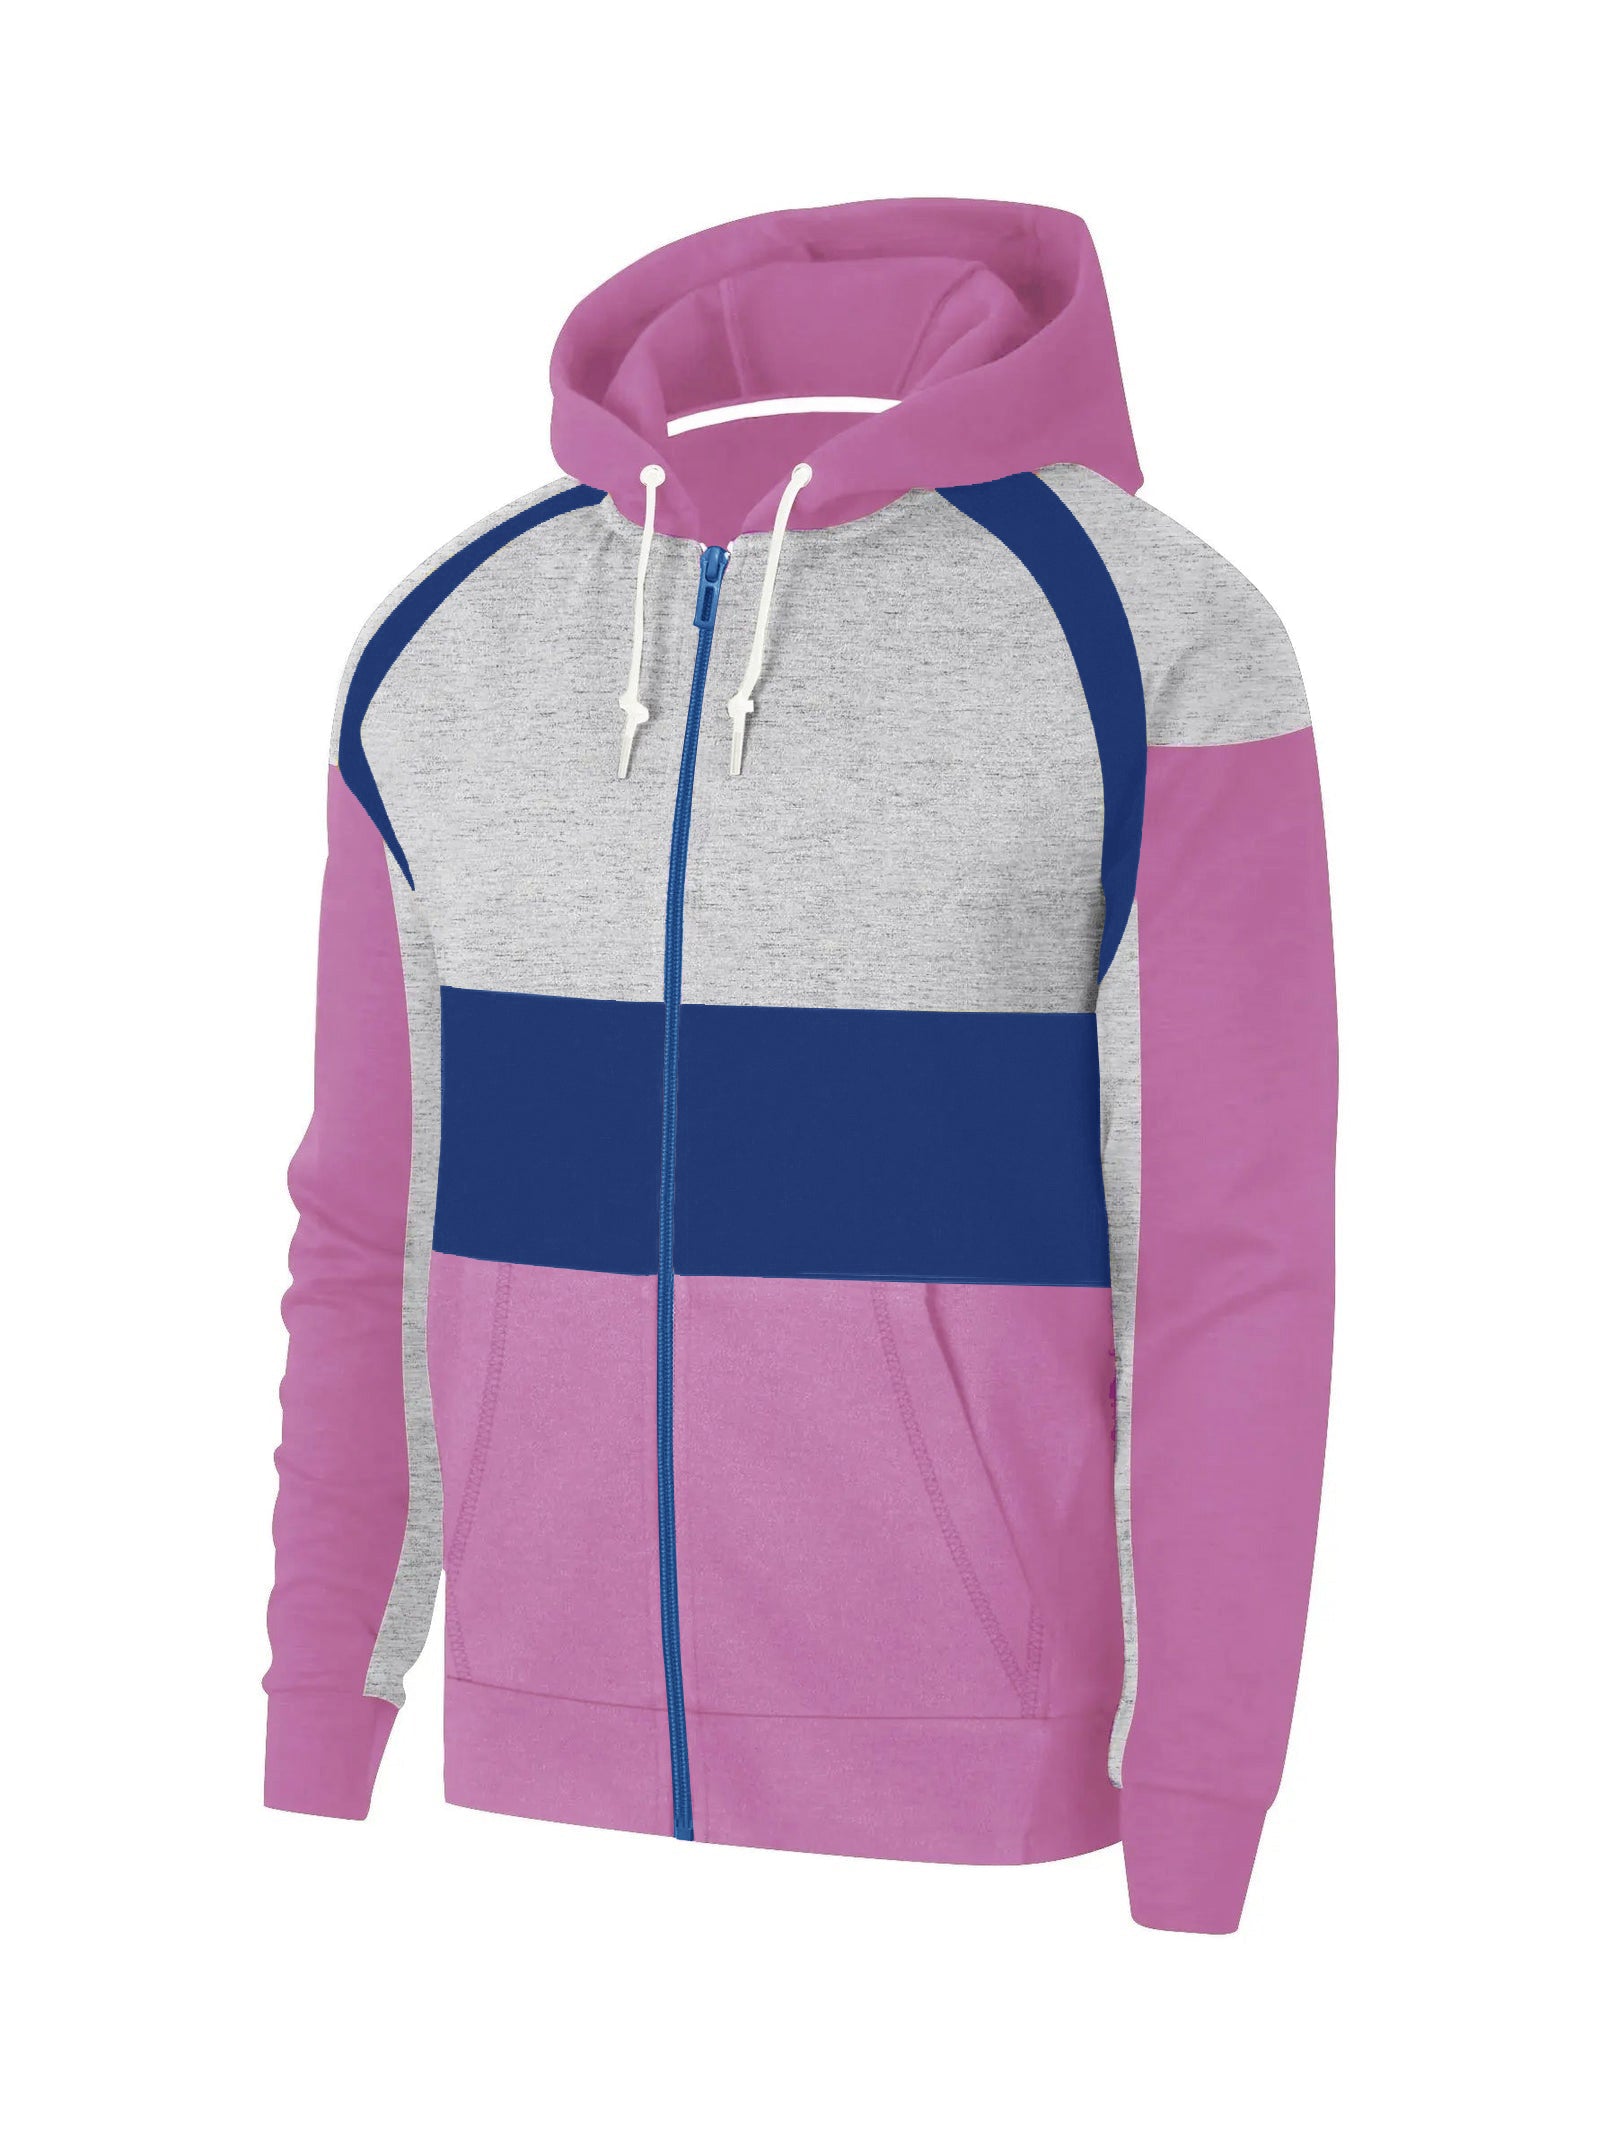 Next Fleece Zipper Hoodie For Men-Pink with Grey Melange And Blue Panels-SP950